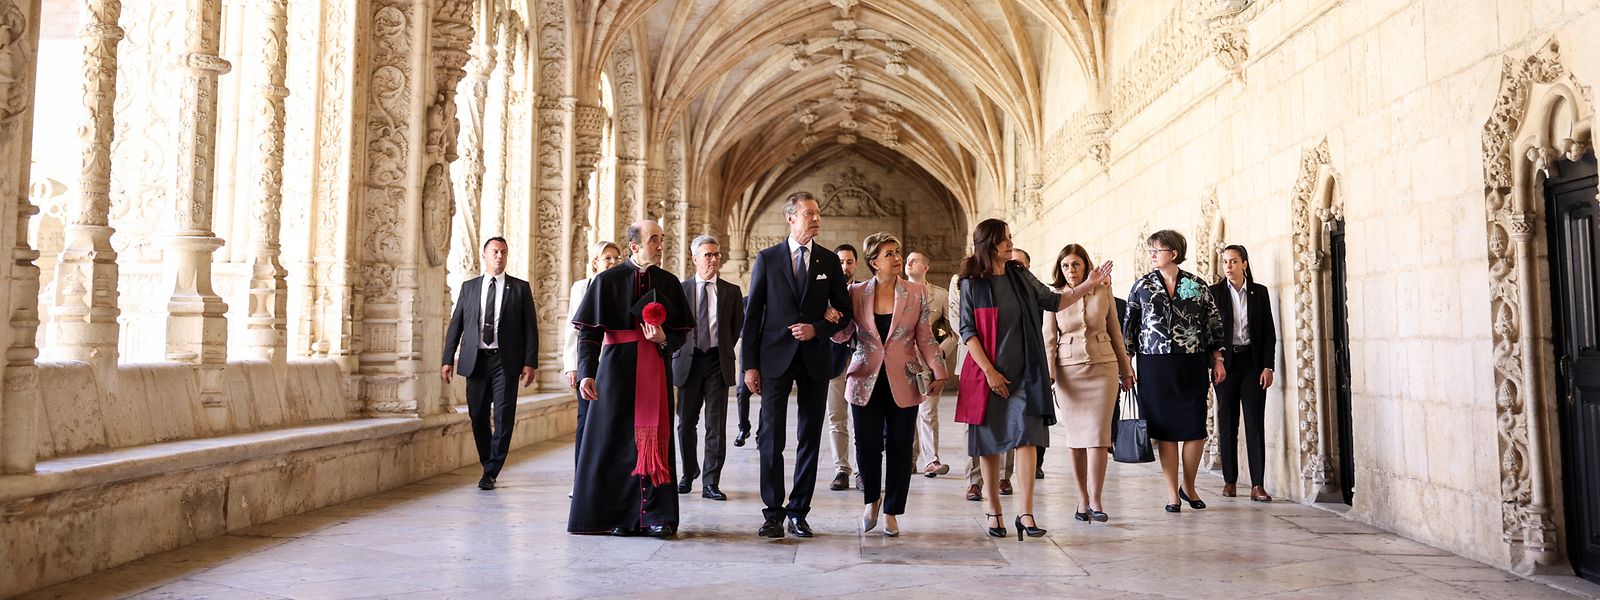 Le Grand-Duc et la Grande-Duchesse ont visité le cloître du monastère des Hiéronymites.